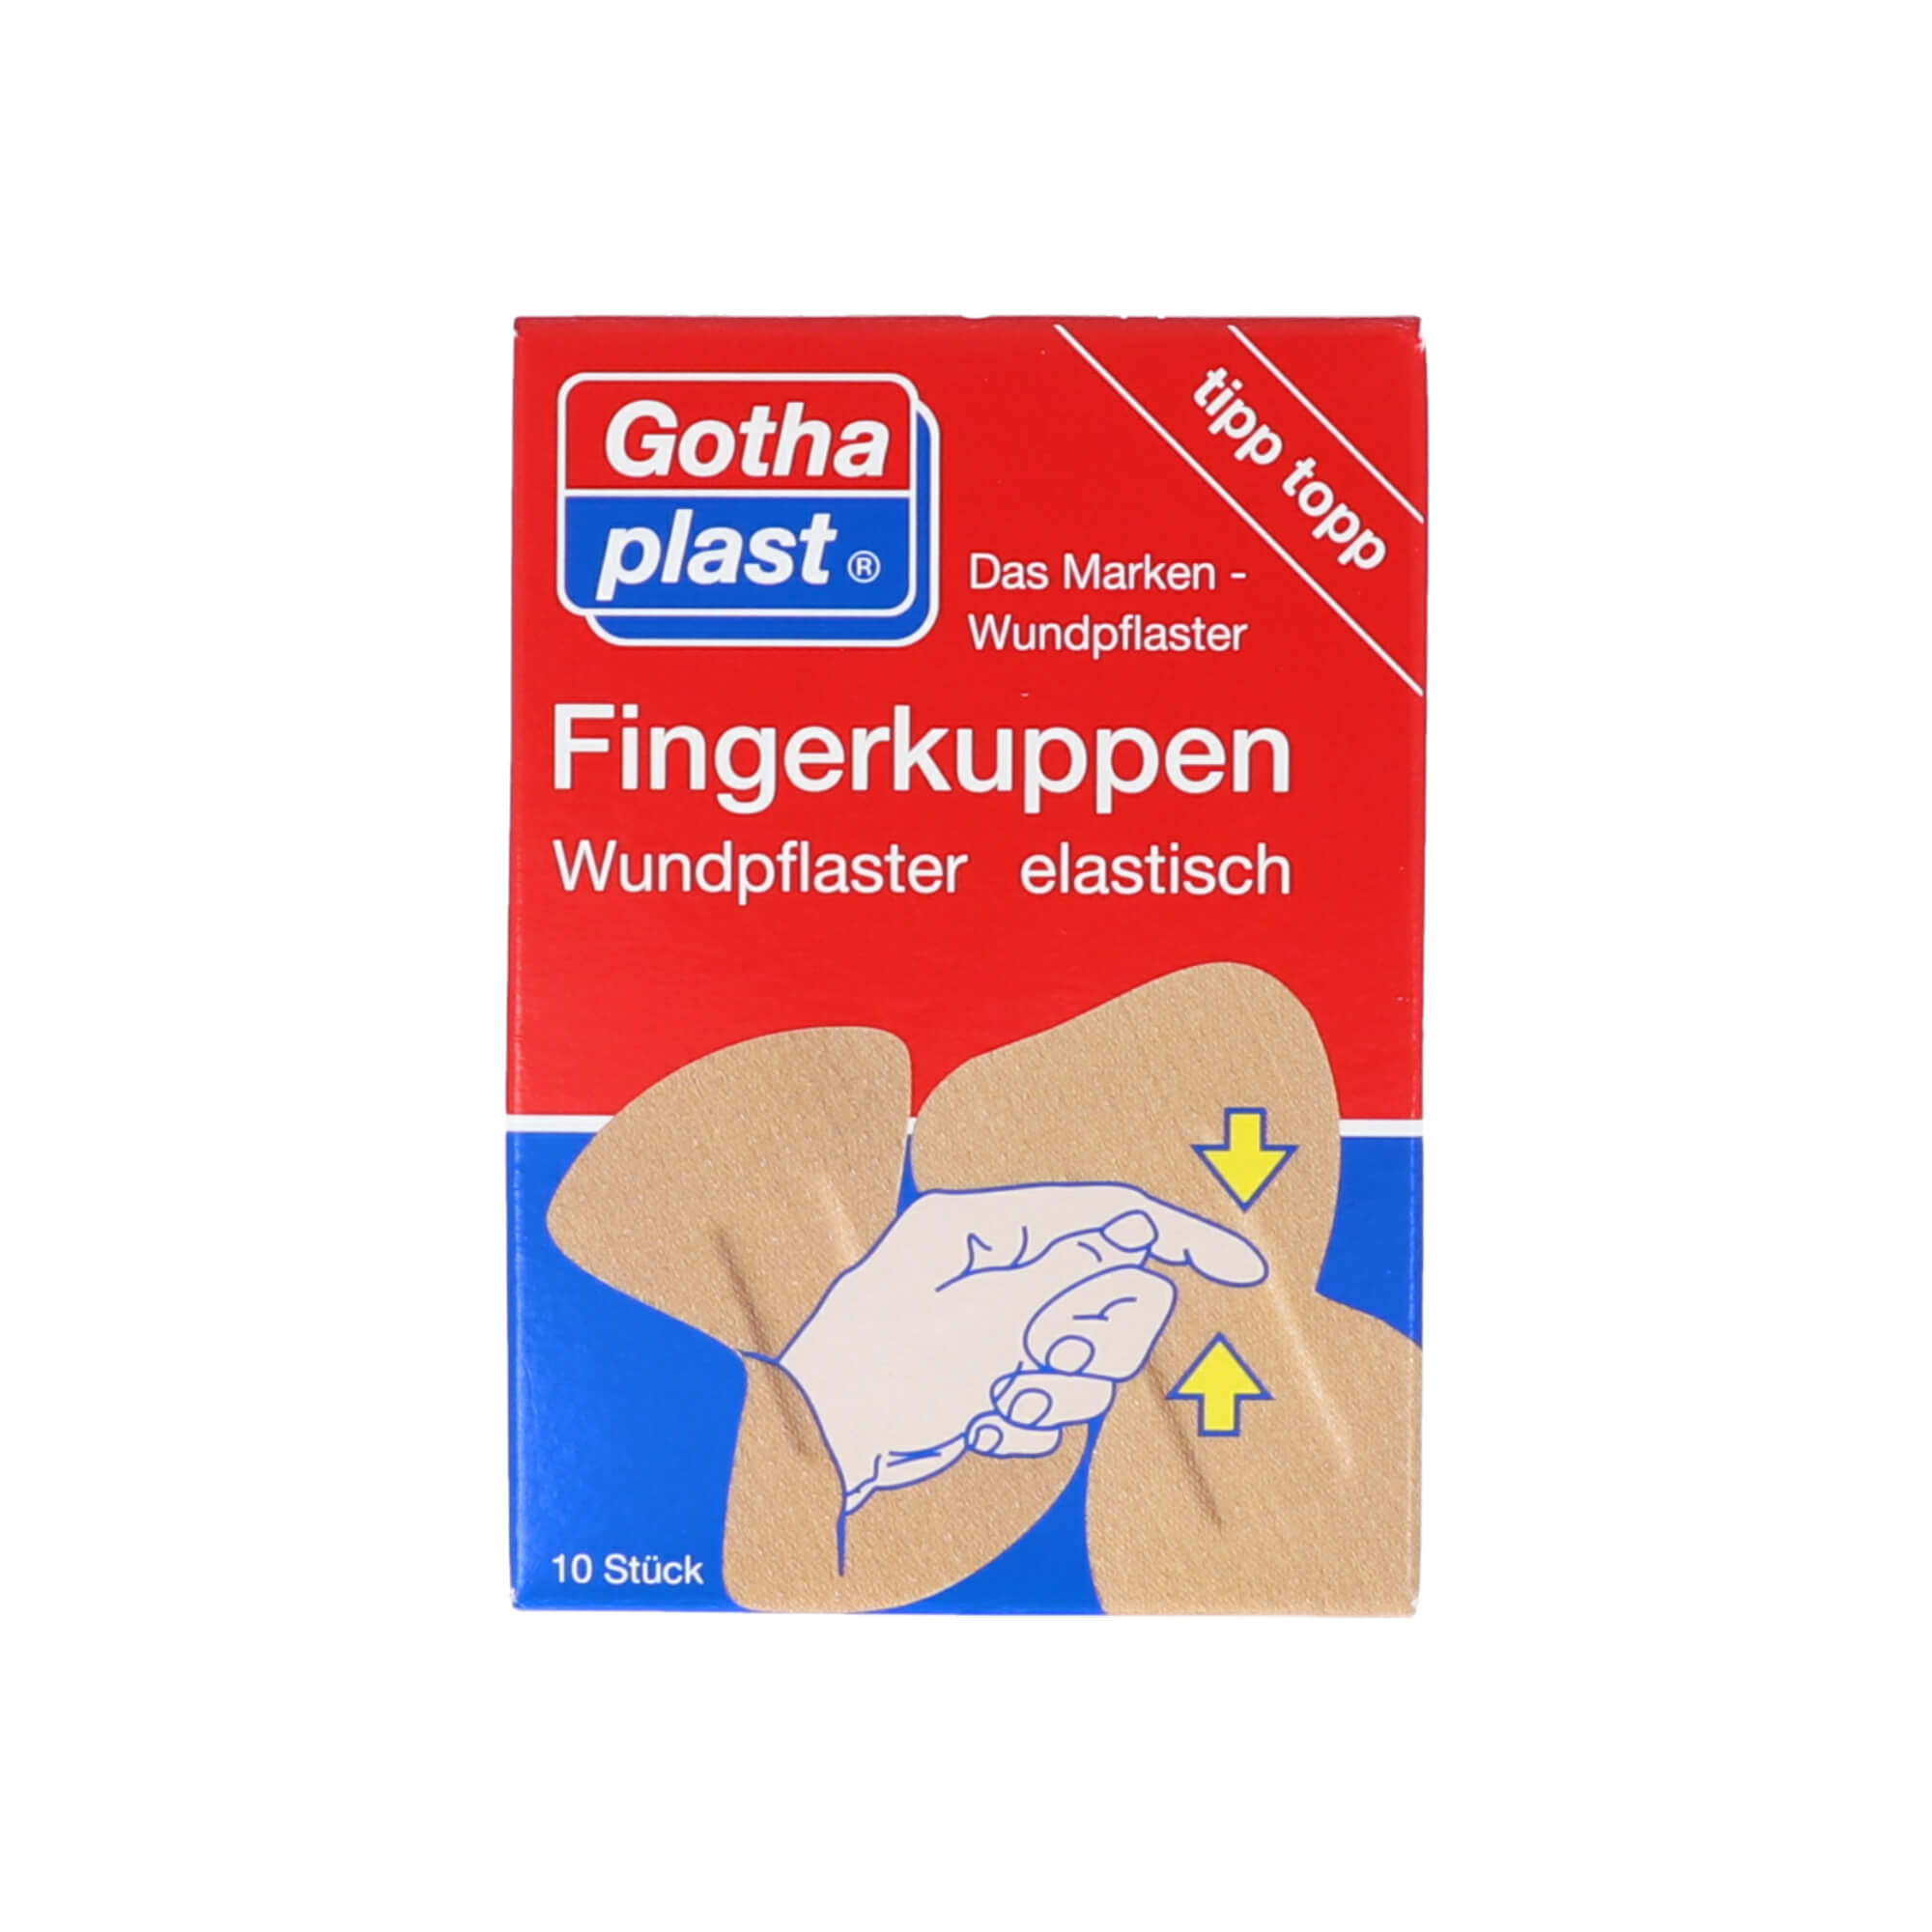 Pflaster für die Fingerkuppen in 2 Größen zur schnellen Wundversorgung an den Fingern.